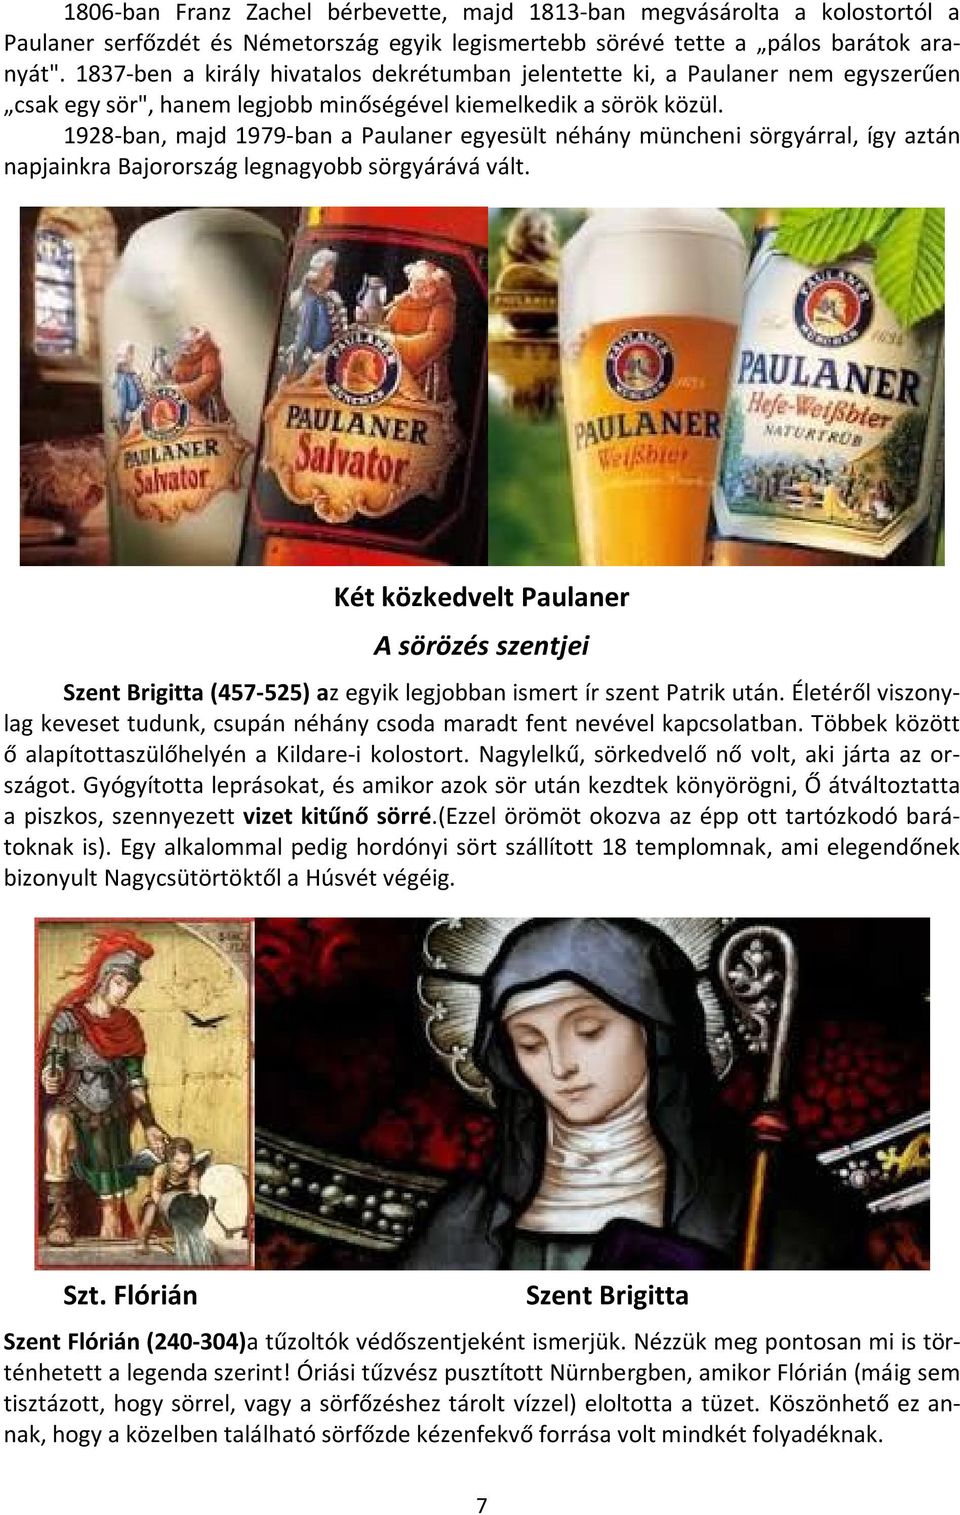 1928-ban, majd 1979-ban a Paulaner egyesült néhány müncheni sörgyárral, így aztán napjainkra Bajorország legnagyobb sörgyárává vált.